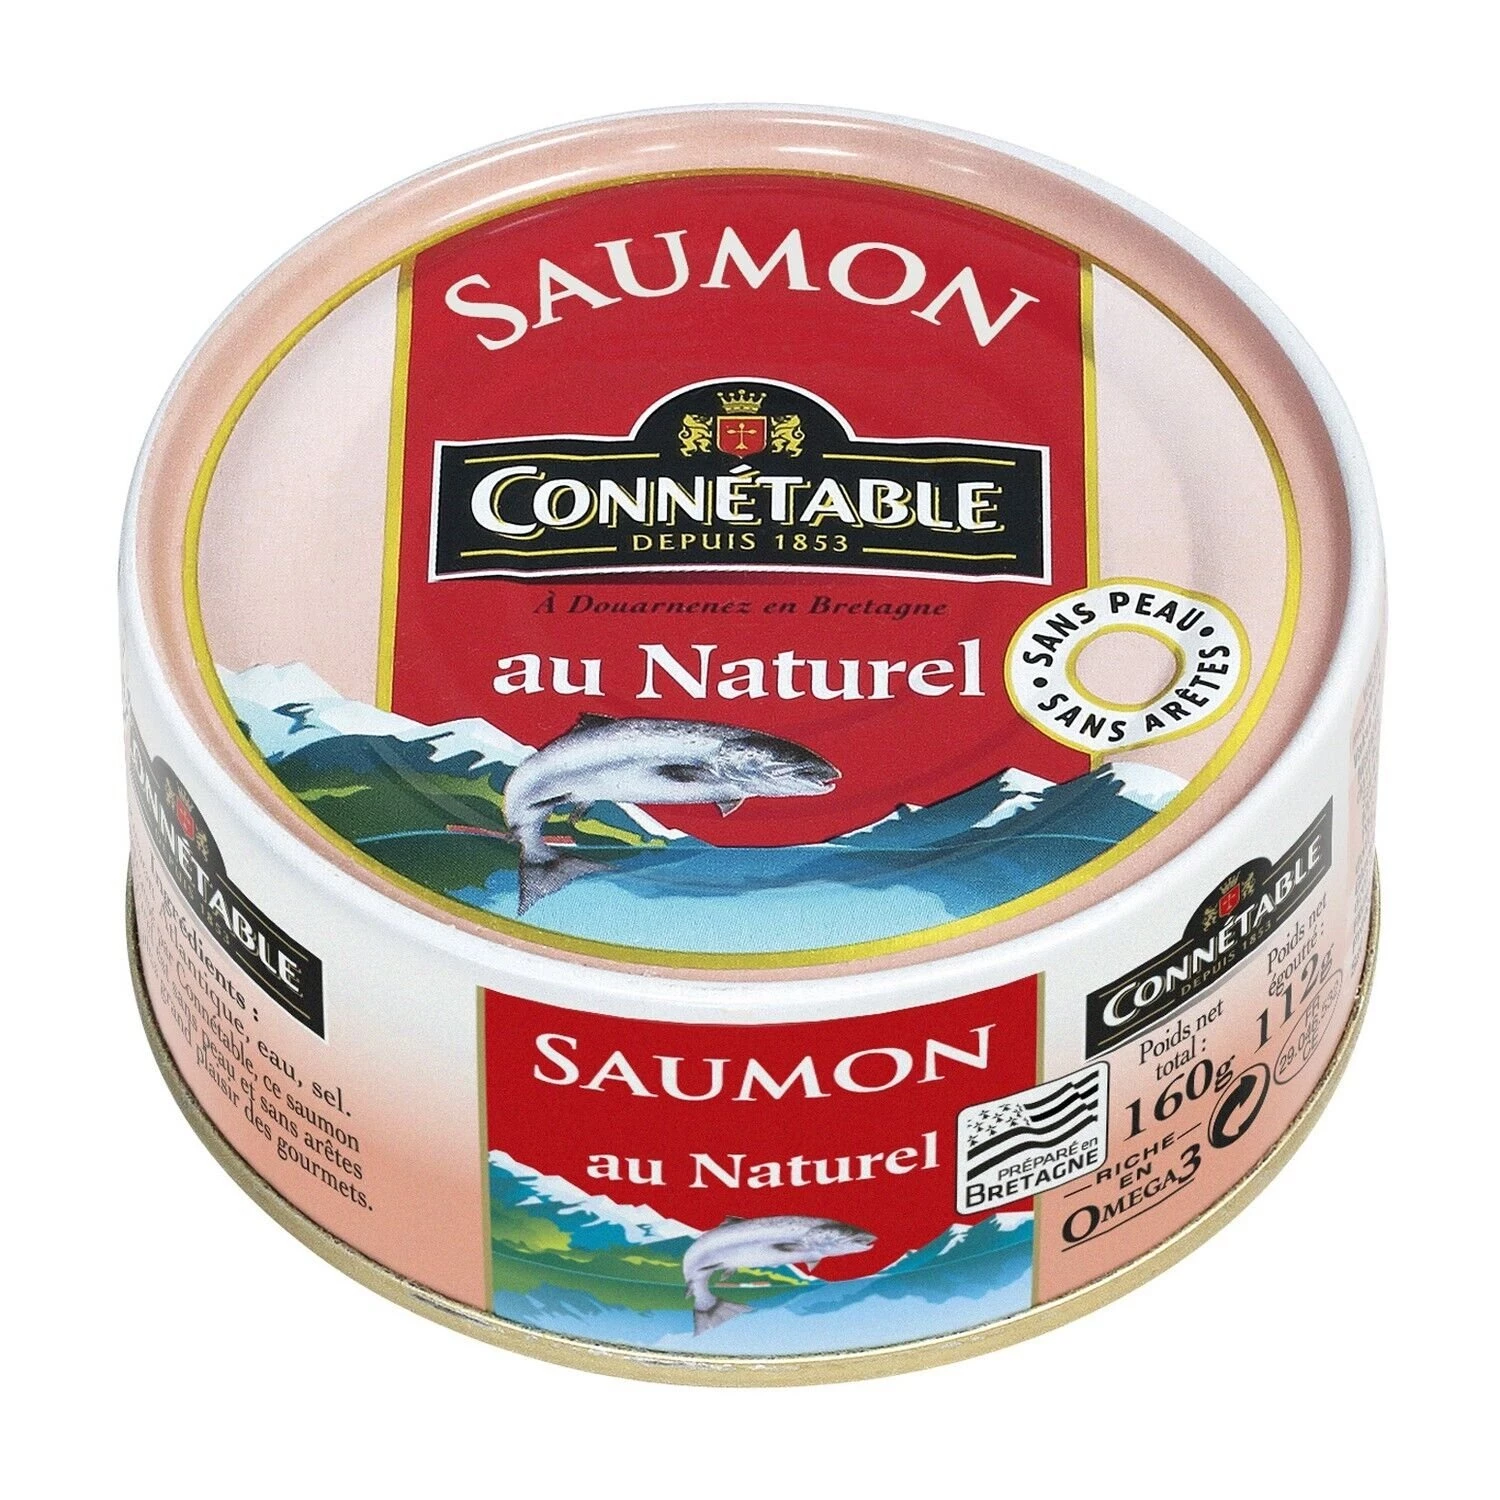 1 5 Collegabile al salmone norvegese